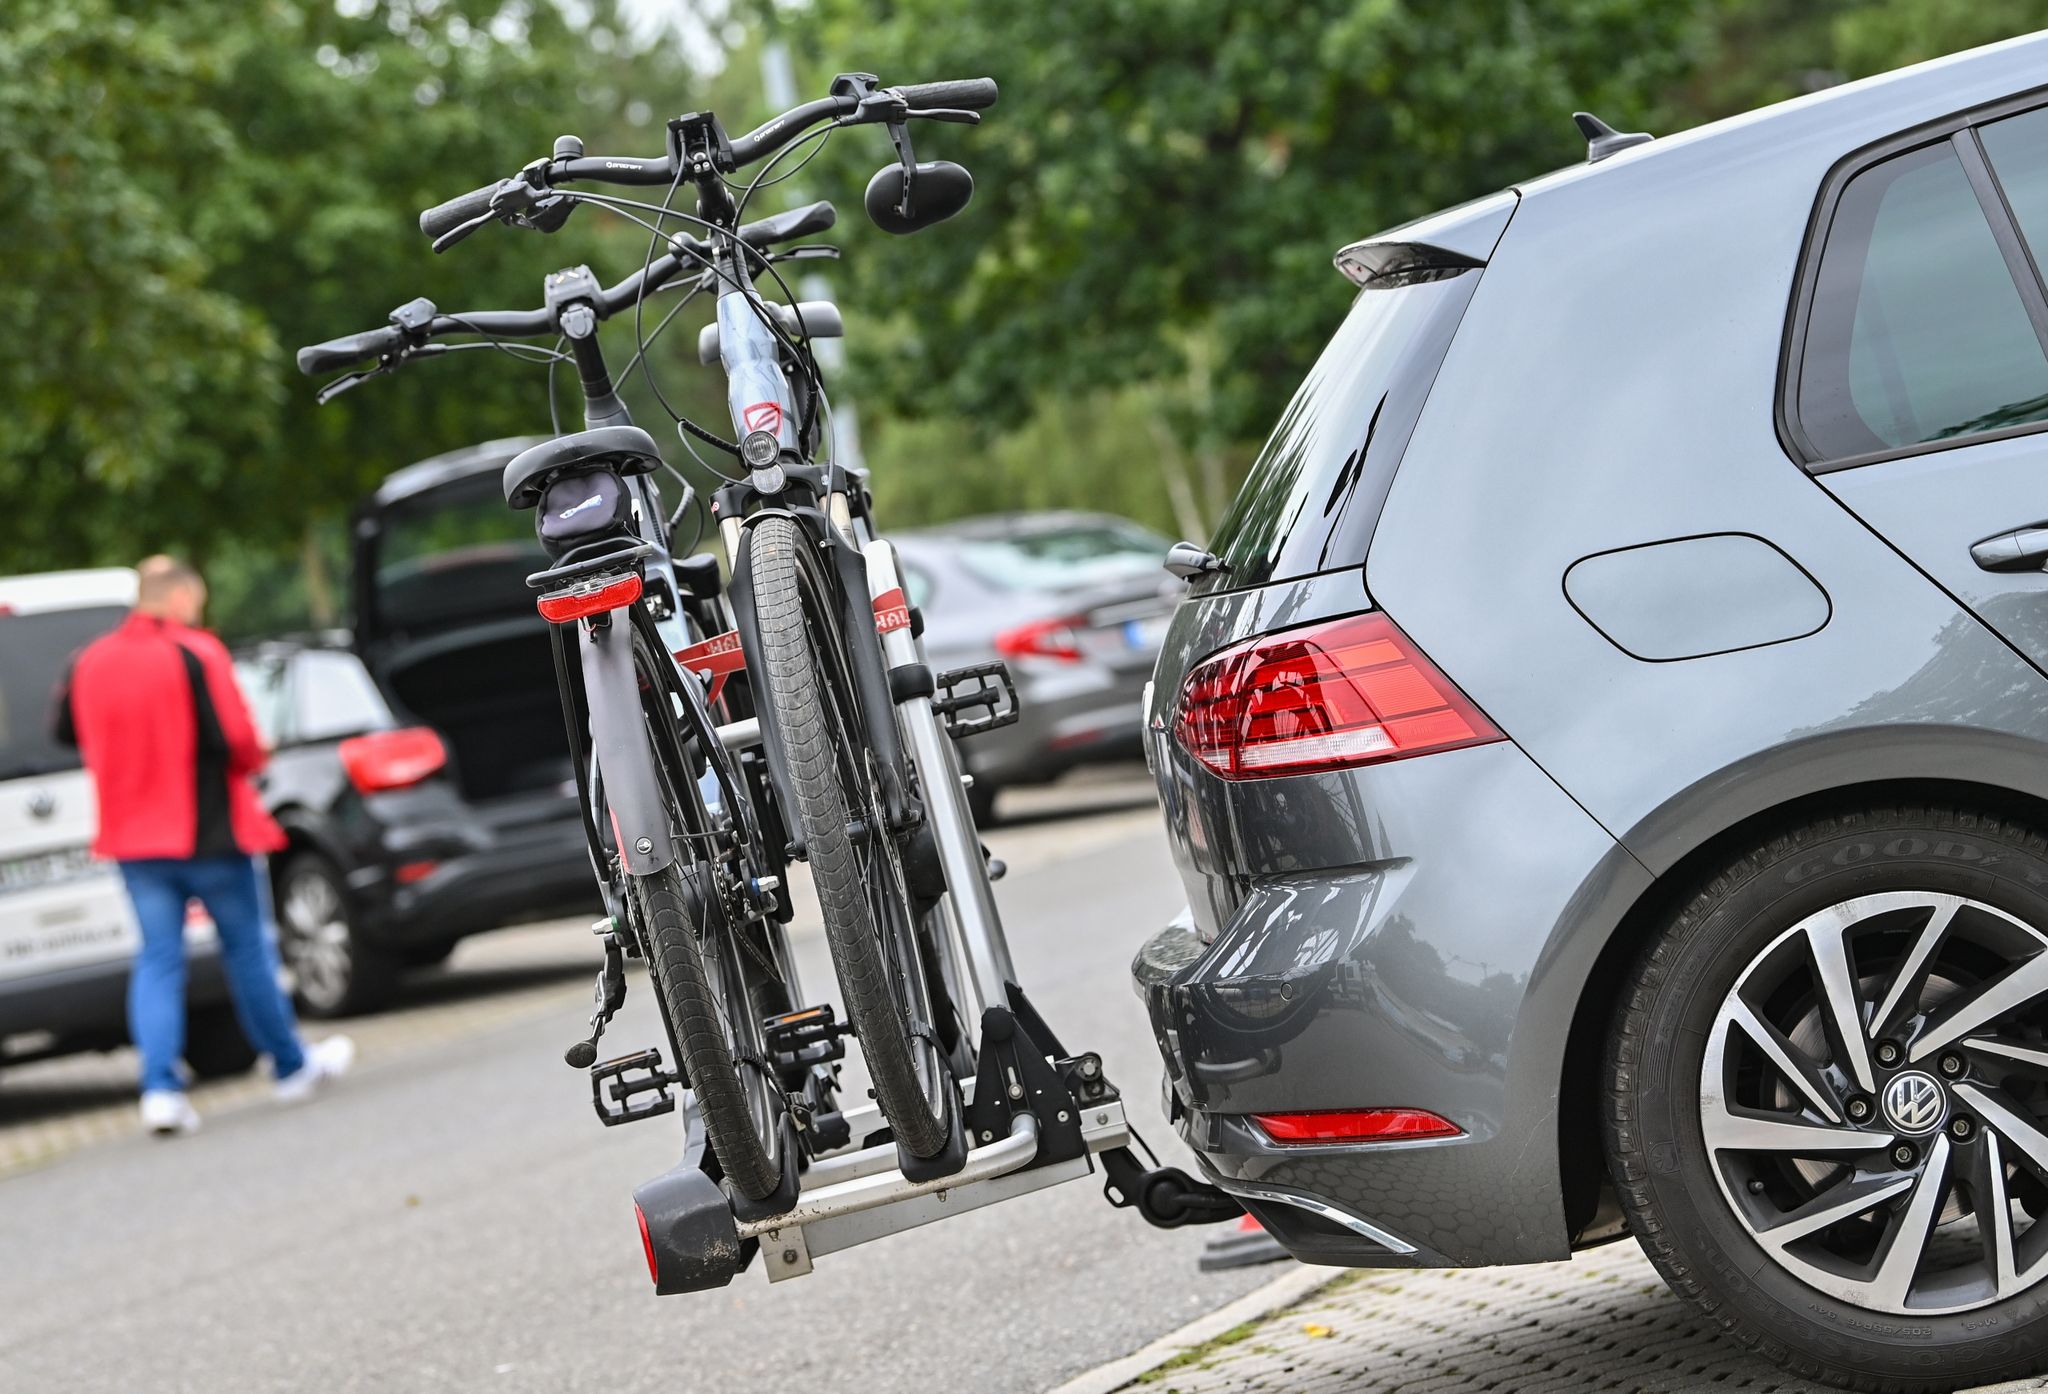 Bei der Auswahl einer Anhängerkupplung für den Fahrradtransport sollte darauf geachtet werden, dass sie den erforderlichen Mindestwerten entspricht.